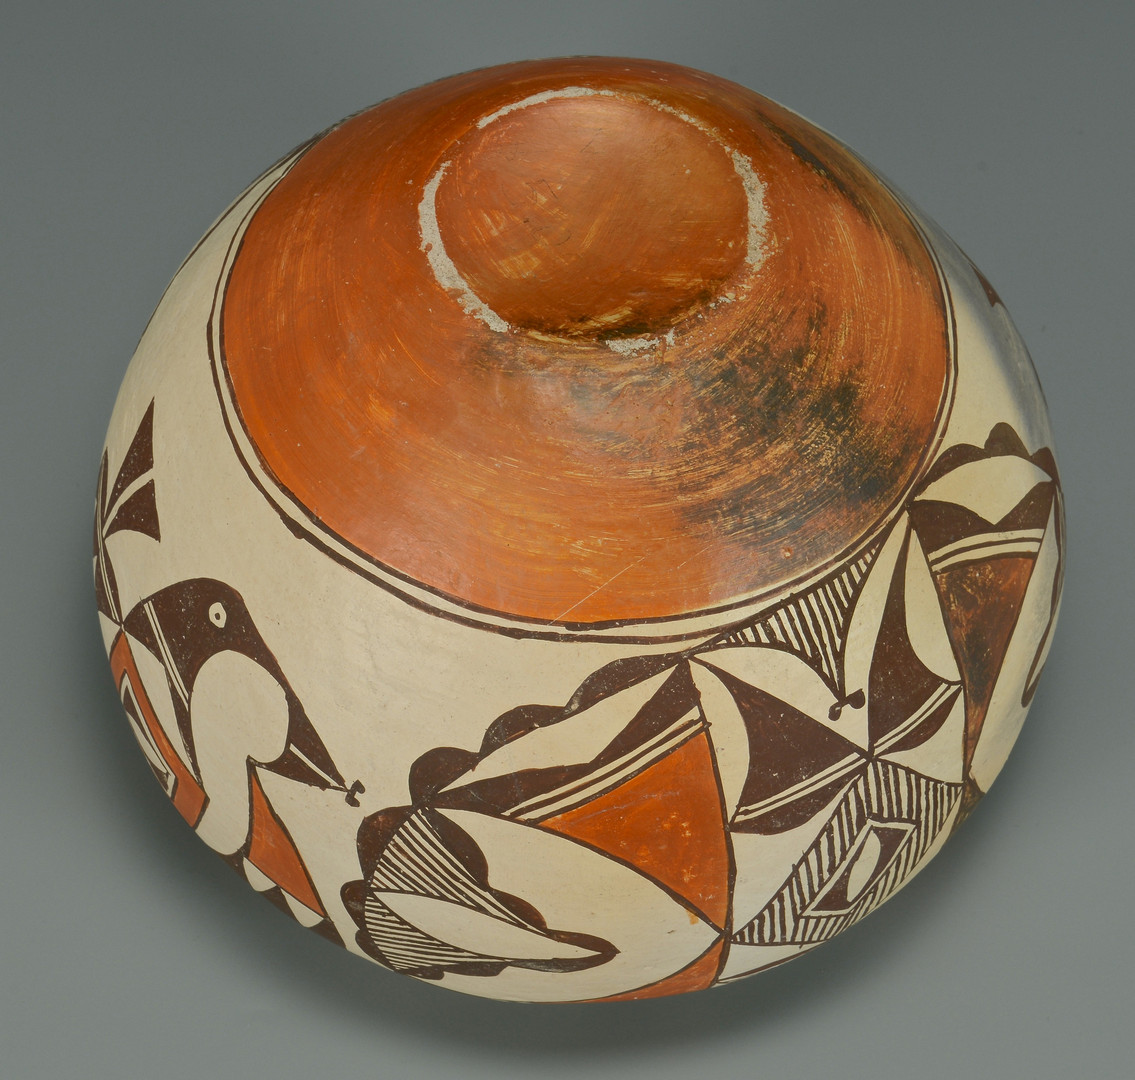 Lot 439: Large Acoma Jar and Cherokee Basket